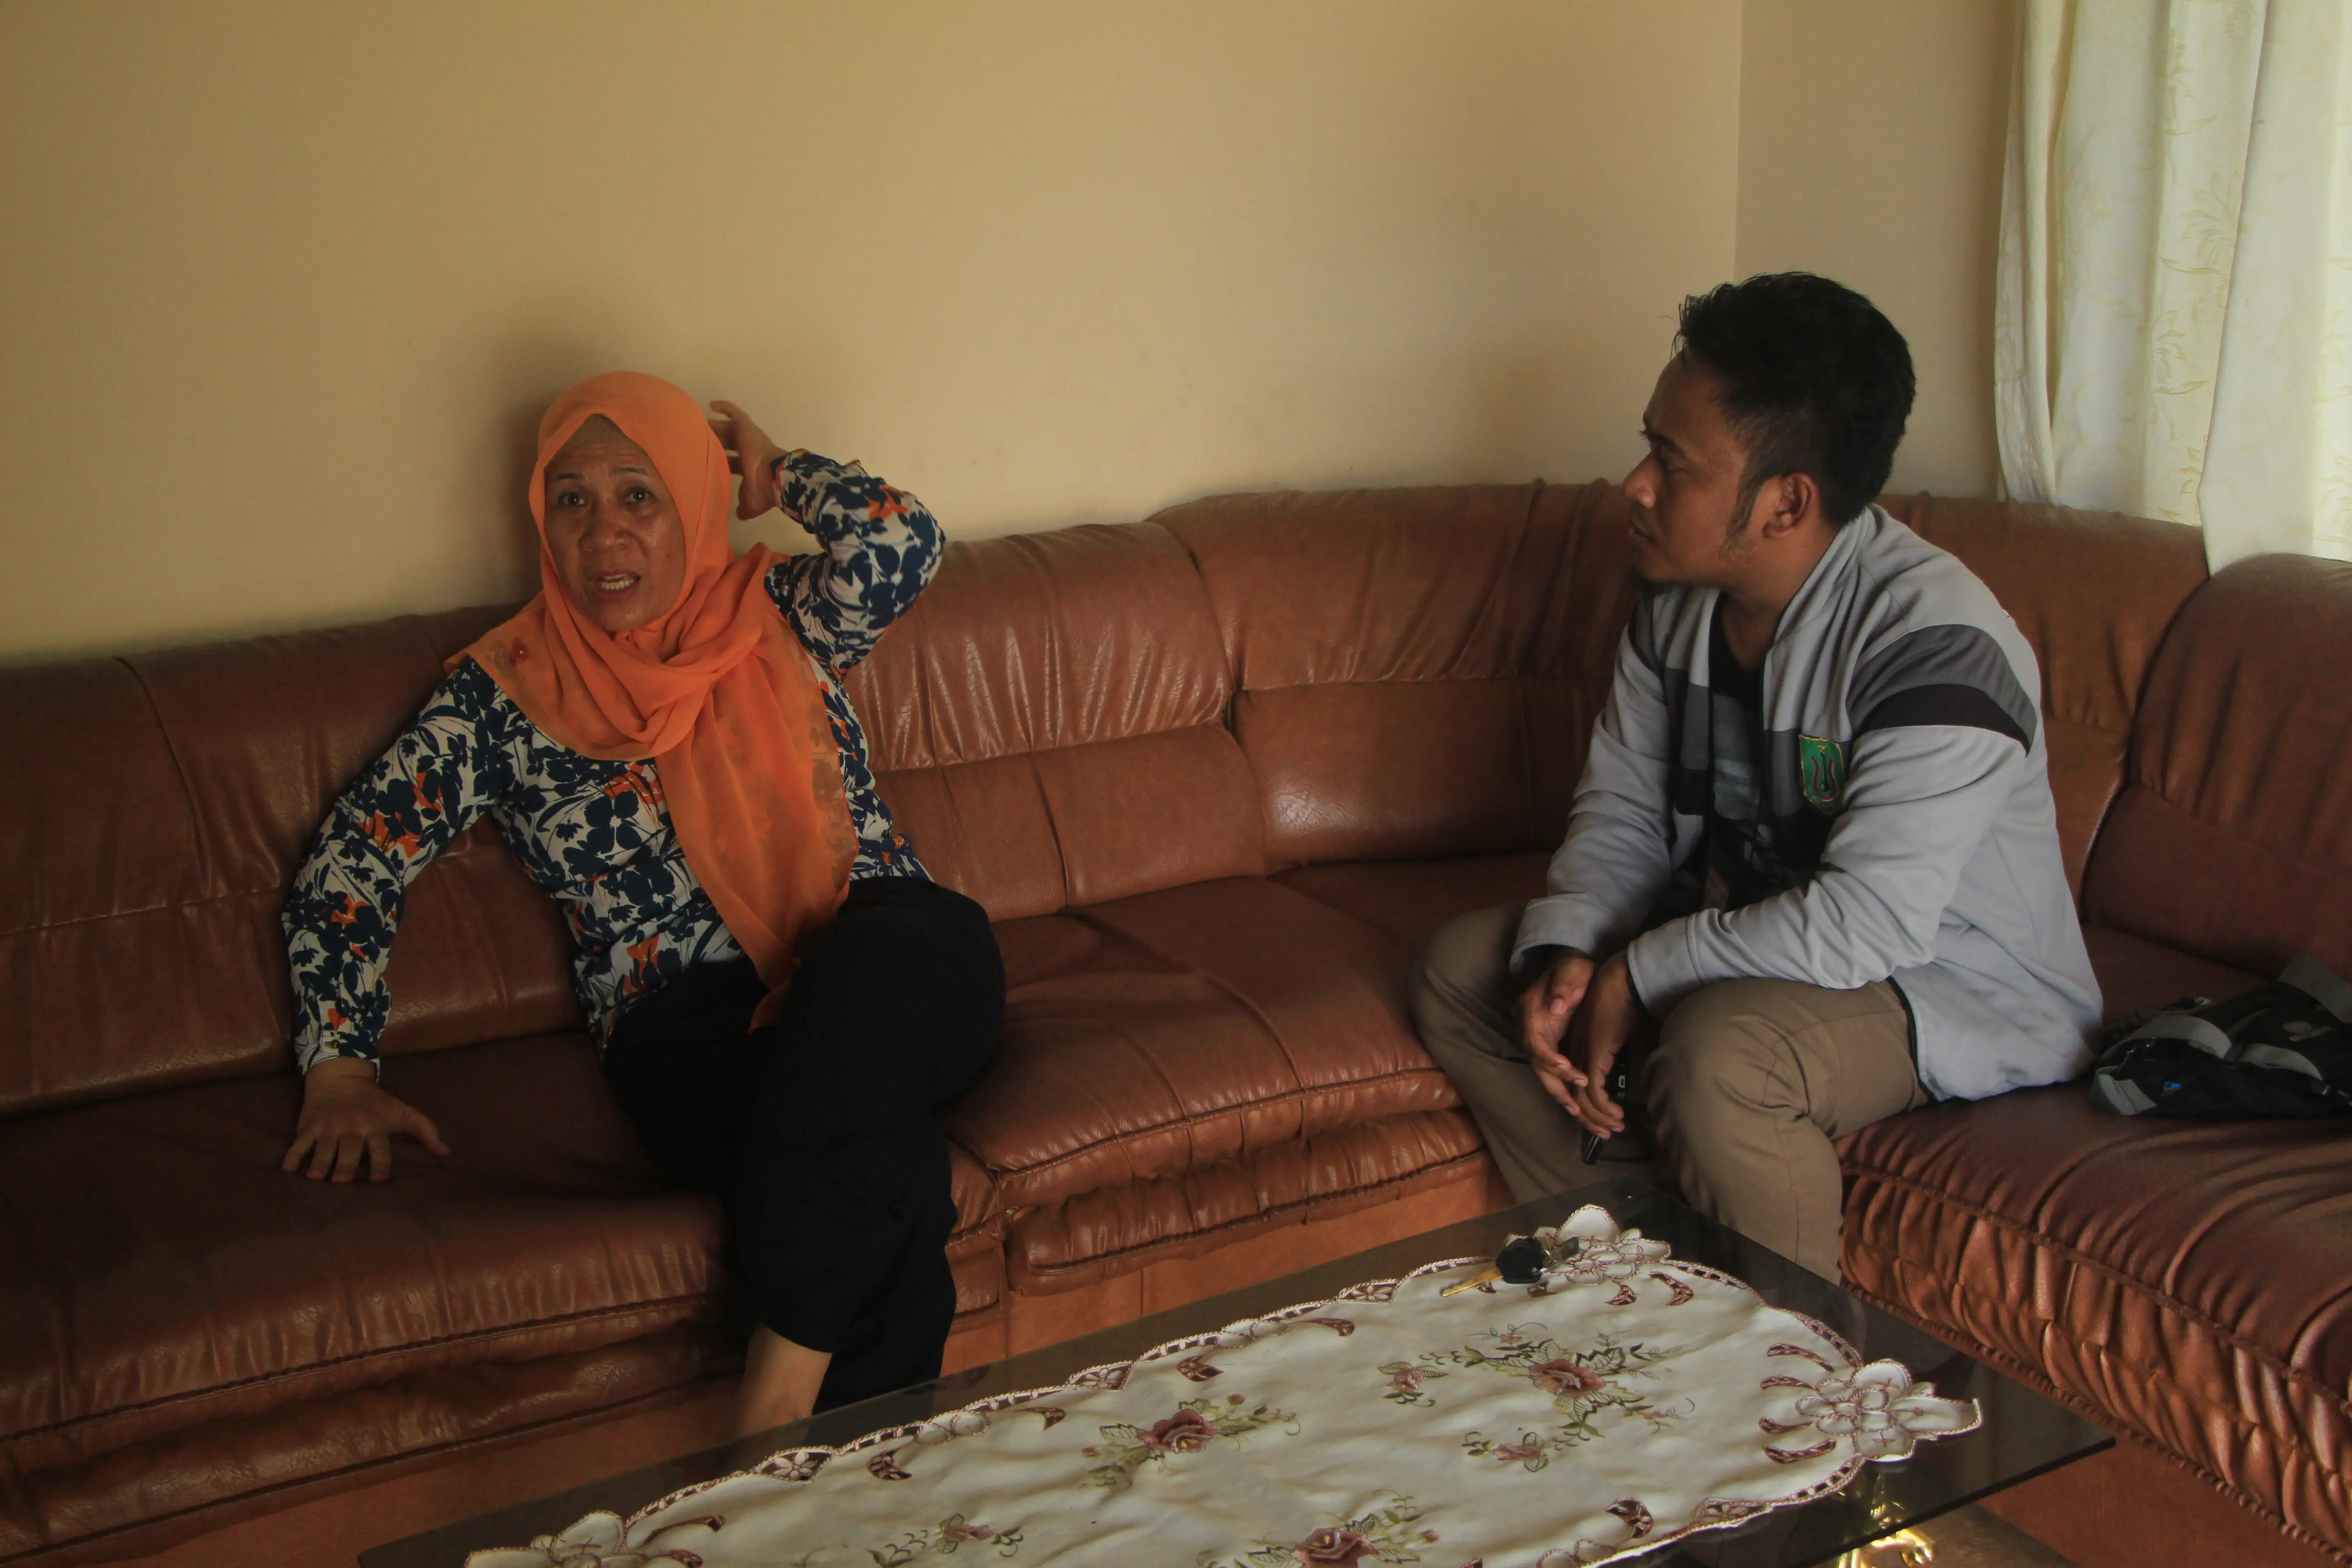 Saksi hidup kecelakaan pesawat Merpati di Gorontalo, Lasmi Abukasi. (Liputan6.com/Arfandi Ibrahim)